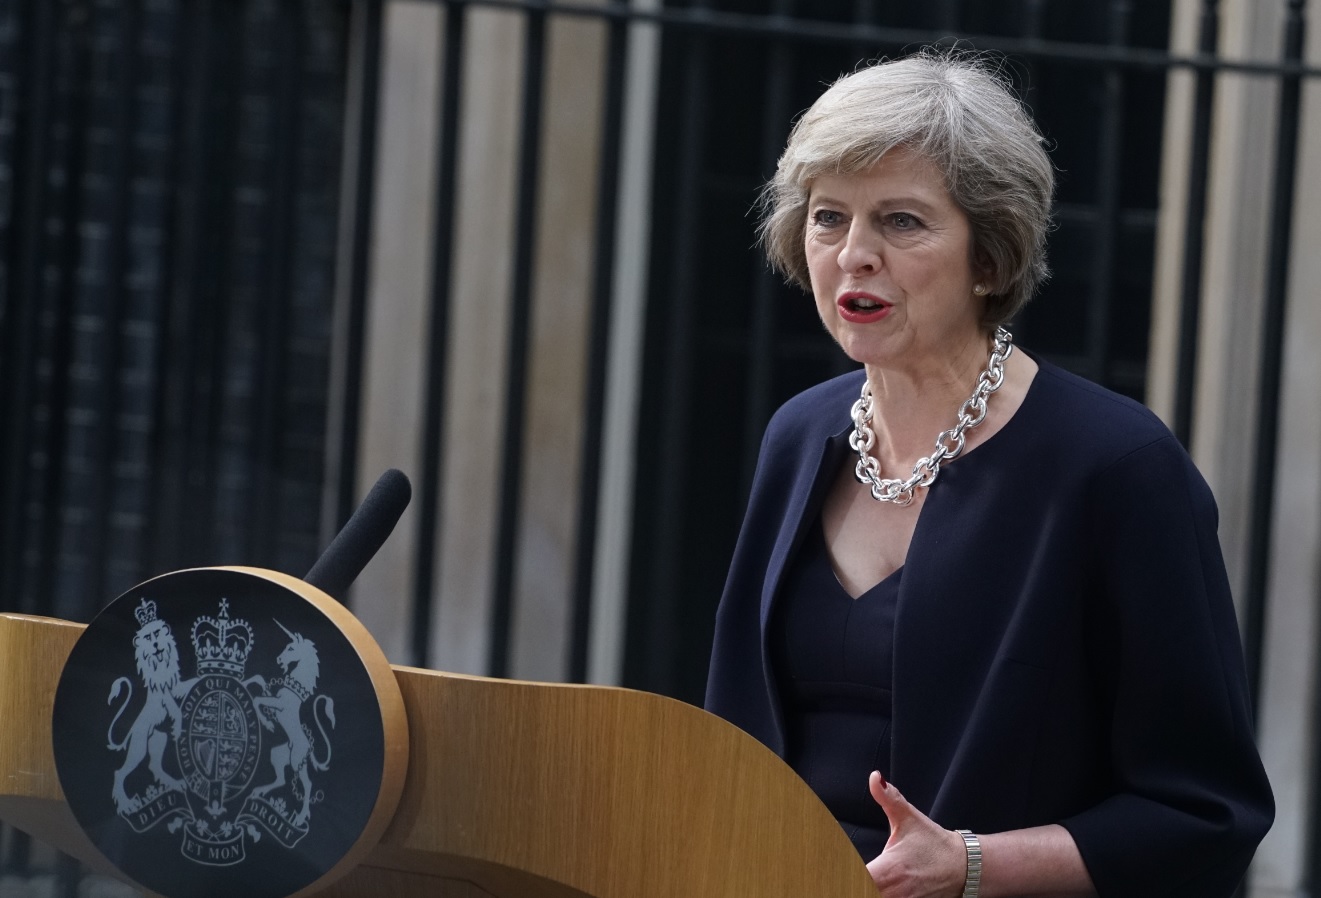   ارتفاع ثقة الناخبين في تعامل رئيسة وزراء بريطانيا مع مفاوضات الخروج 